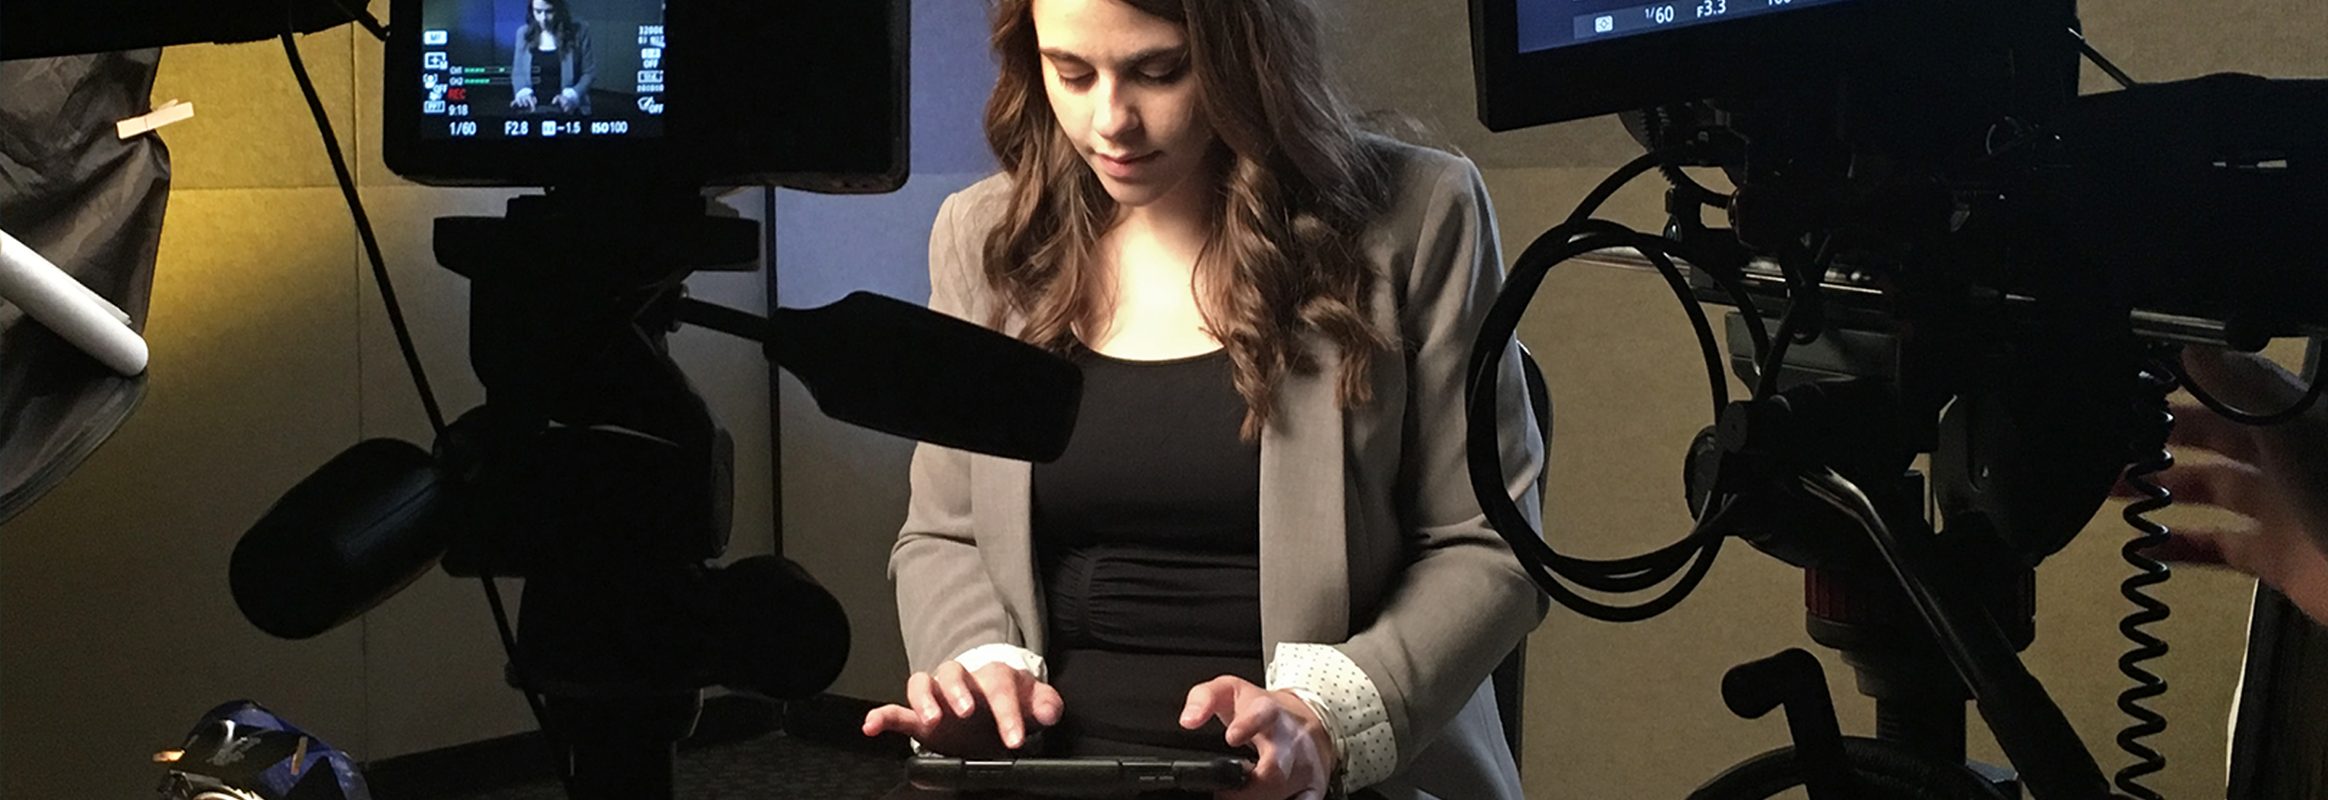 Girl typing on an iPad